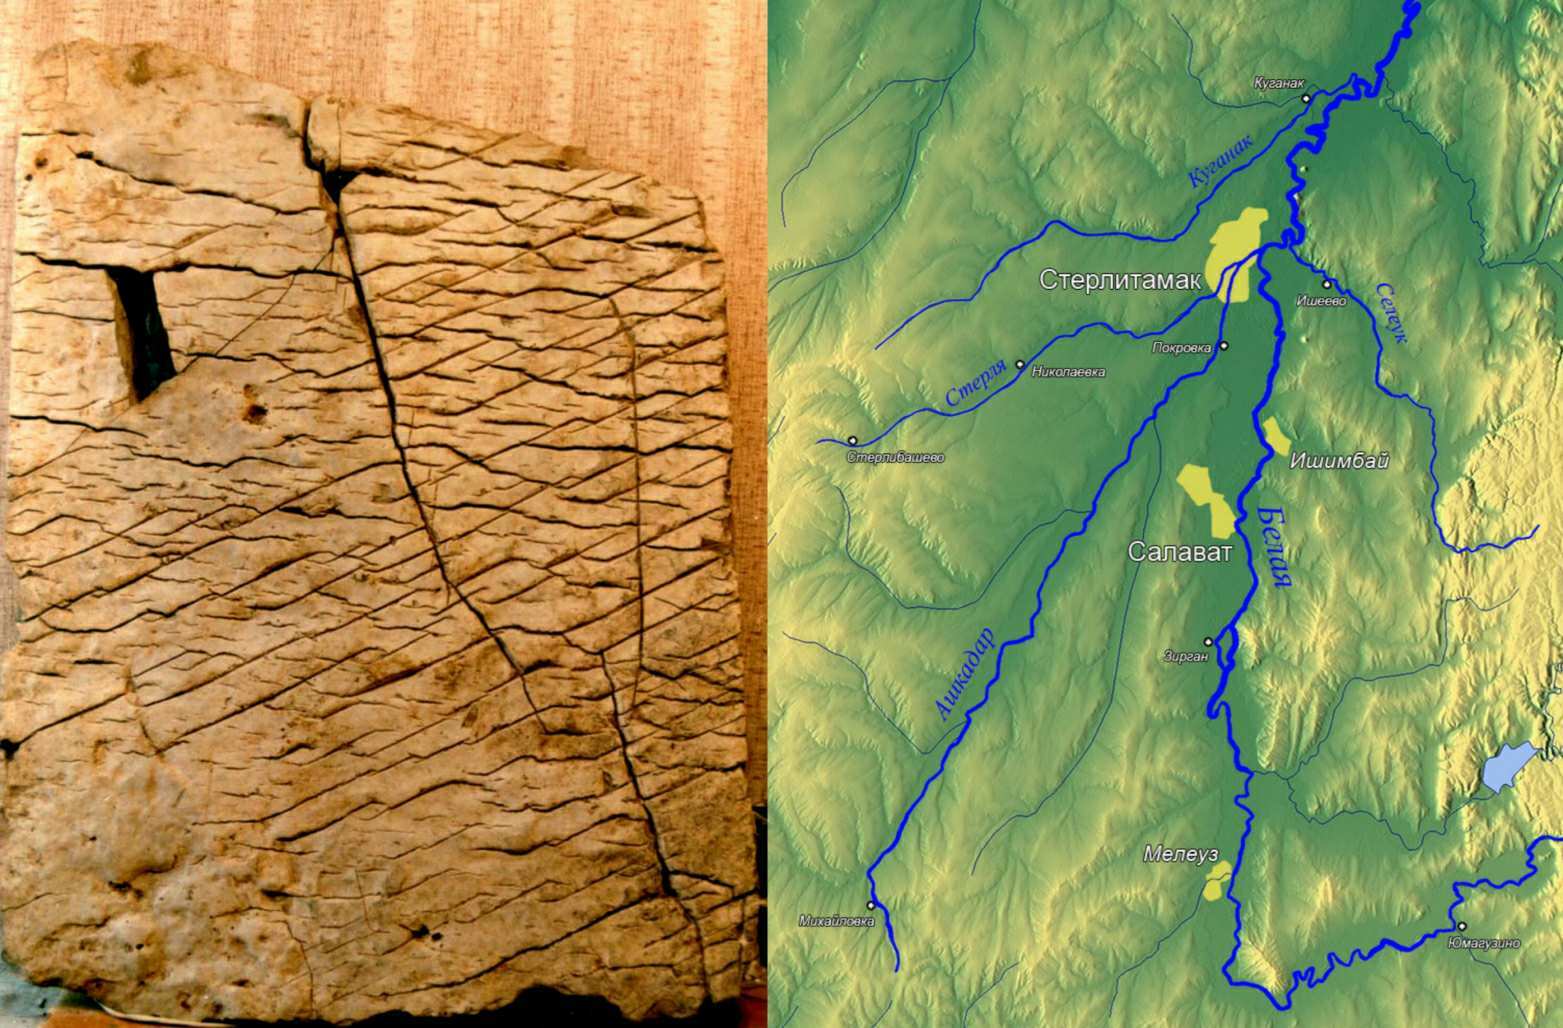 แท็บเล็ตดูเหมือนจะแสดงแผนที่ภูมิประเทศที่มีความแม่นยำสูงของ Bashkiria ซึ่งเป็นพื้นที่เฉพาะของเทือกเขาอูราล ที่ขนาดประมาณ 1:1.1 กม.